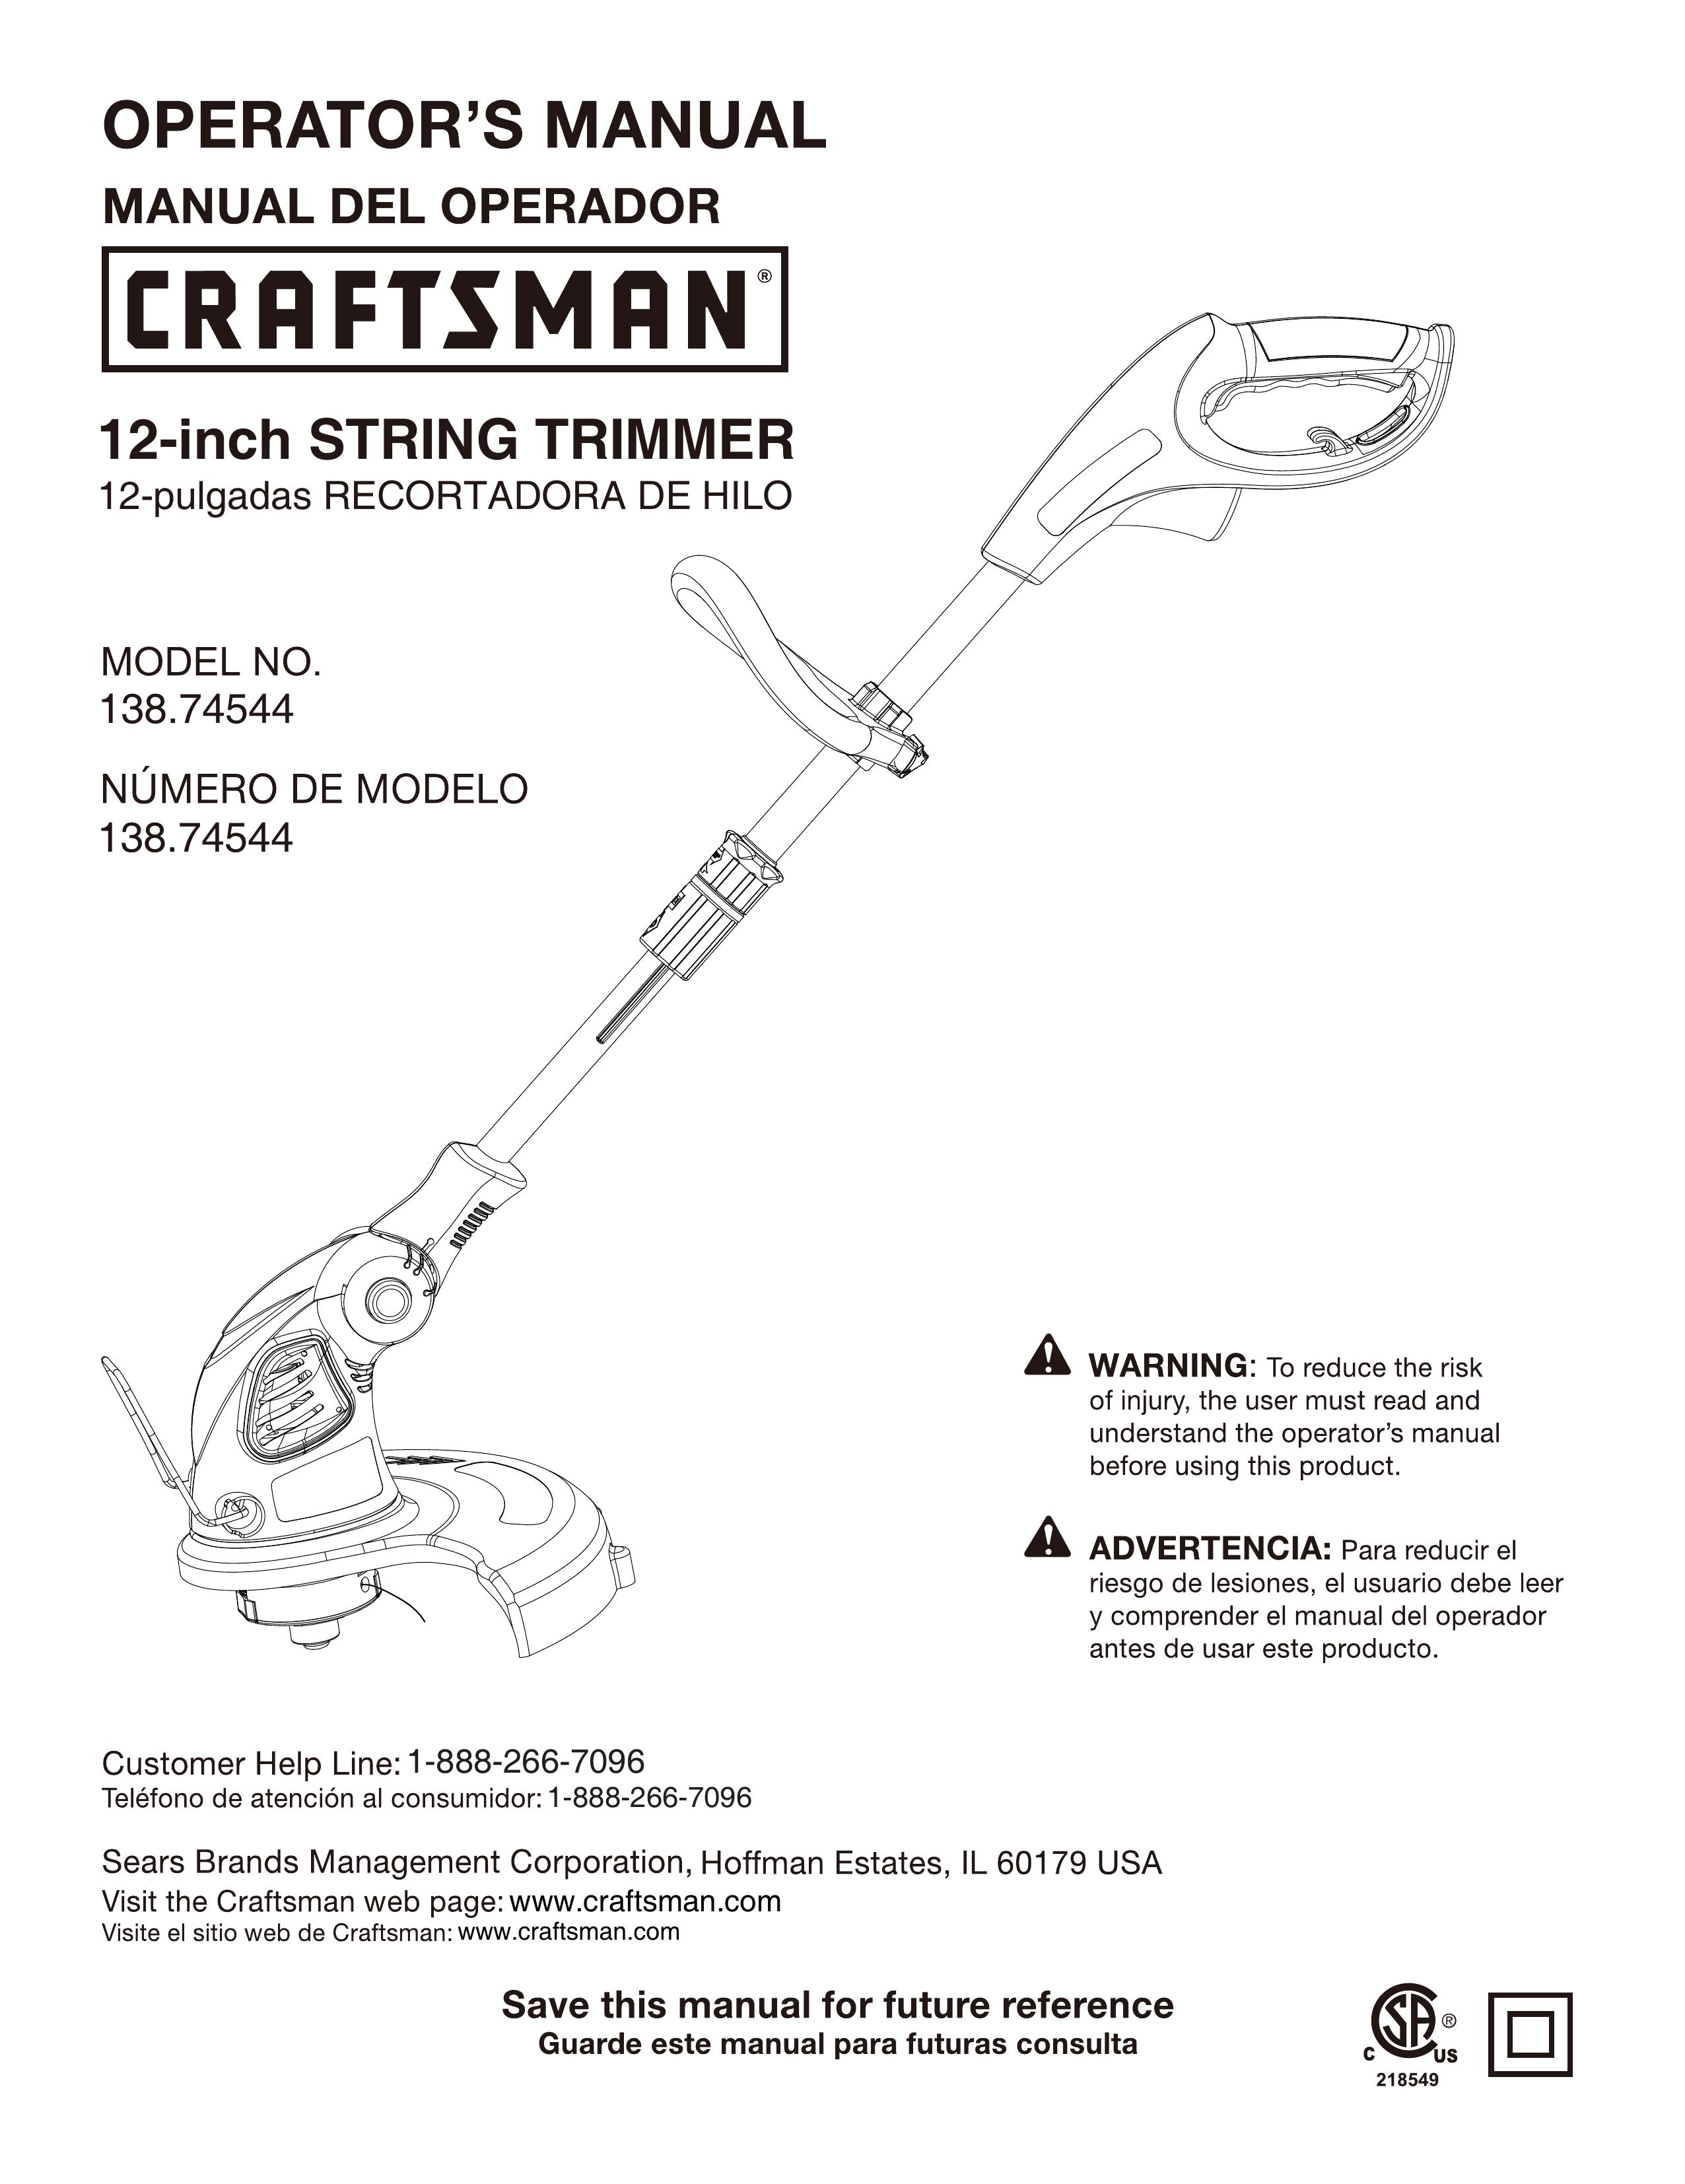 Craftsman 138.74544 Trimmer User Manual